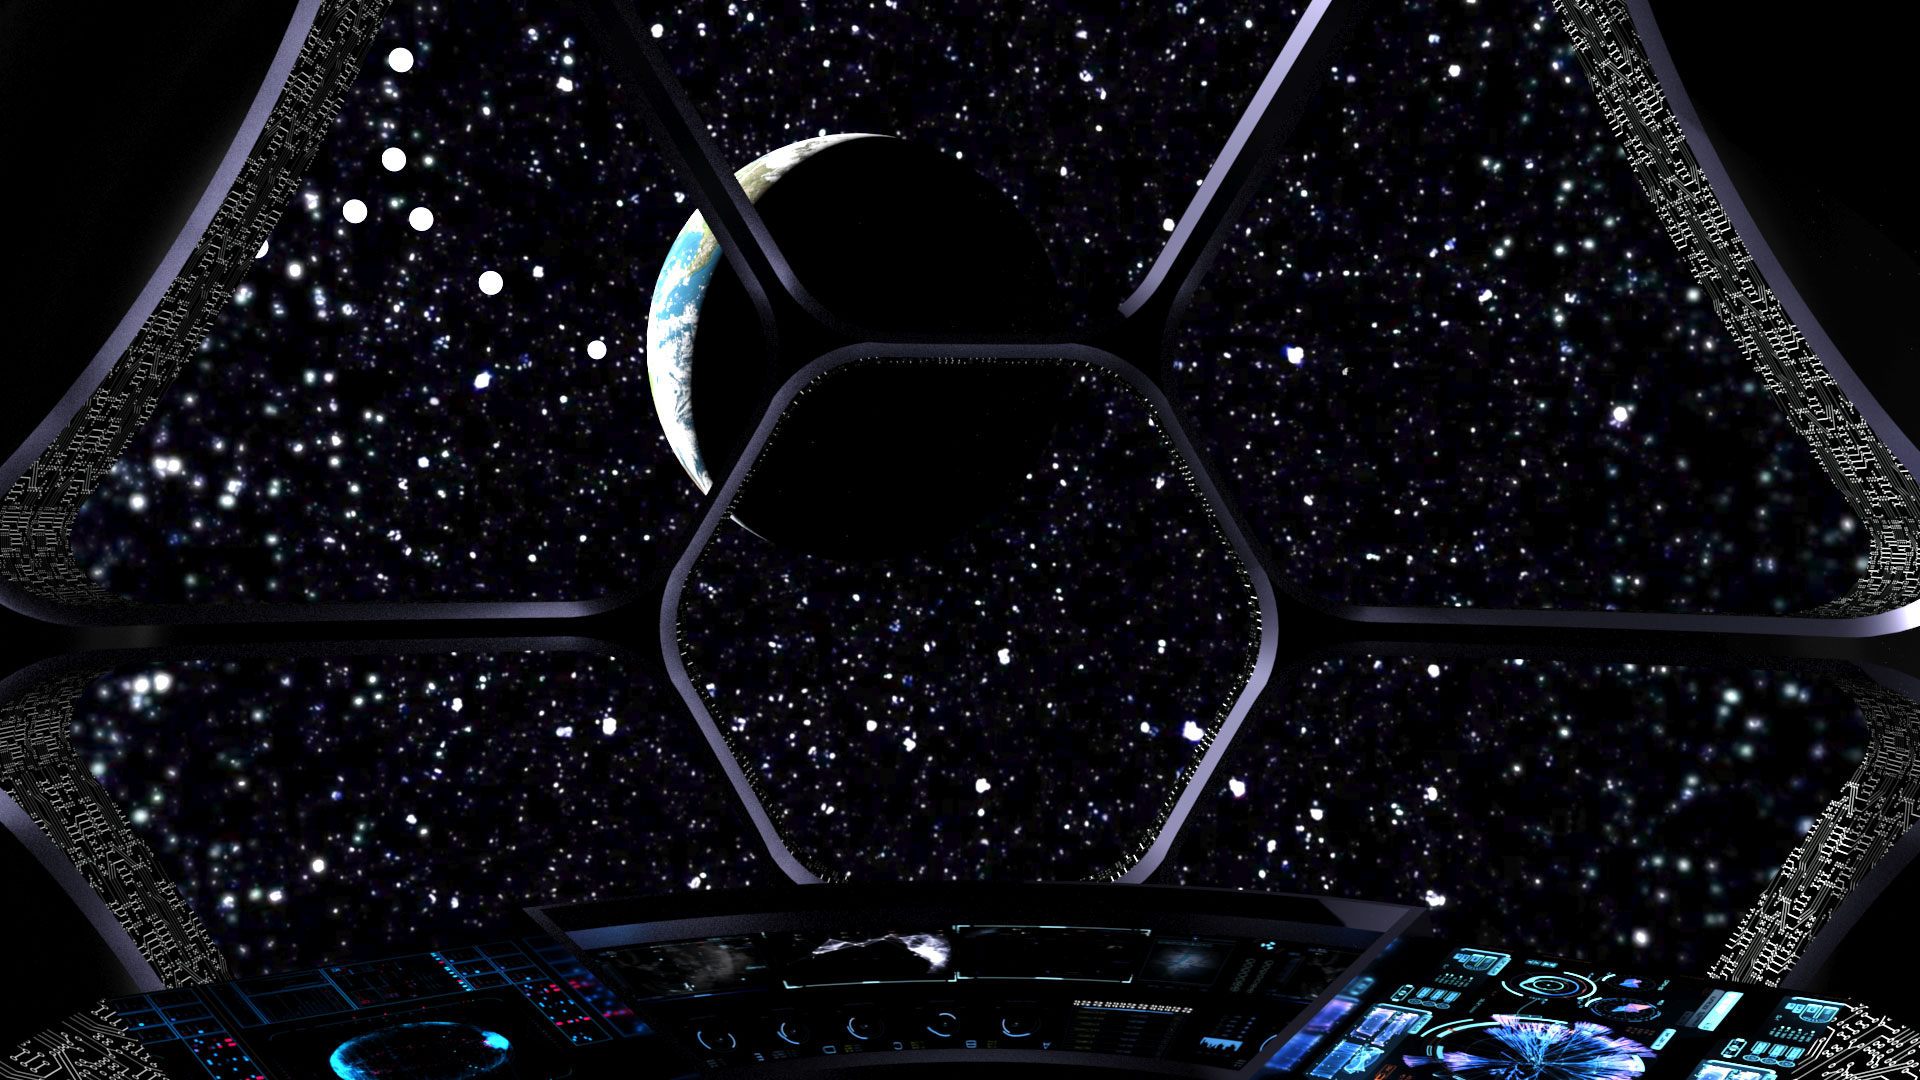 Spaceship Cockpit